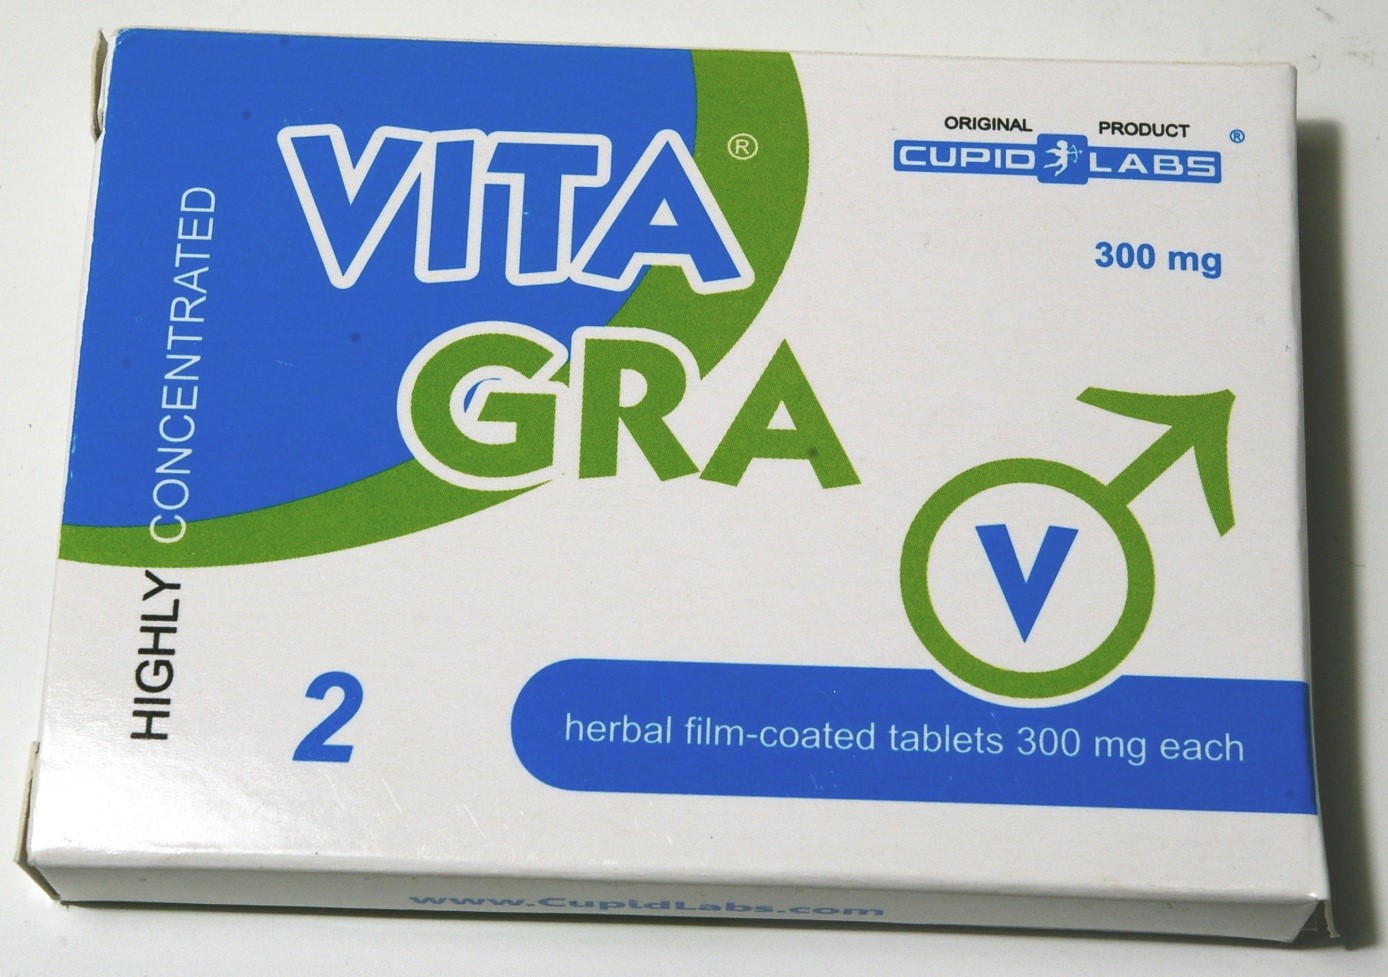 Billede af det ulovlige produkt: Vitagra